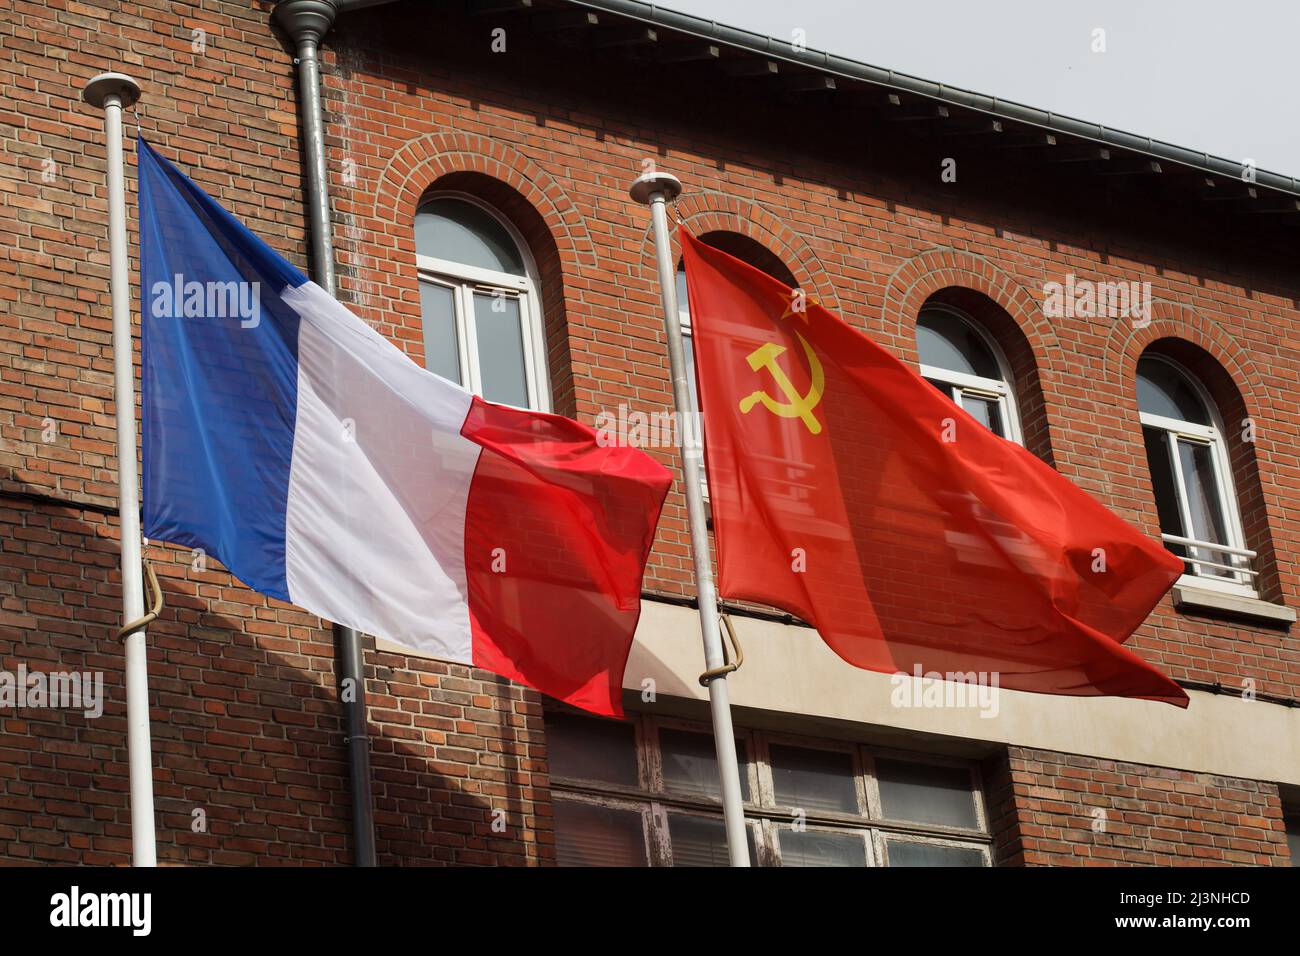 Am Eingang des Museums der Kapitulation (Musée de la Redadition) in Reims, Frankreich, winken die Nationalflaggen Frankreichs und der Sowjetunion. Das erste deutsche Kapitulationsinstrument, das den Zweiten Weltkrieg in Europa beendete, wurde in diesem Gebäude am 7. Mai 1945 um 02:41 Uhr mitteleuropäischer Zeit (MEZ) unterzeichnet. Stockfoto